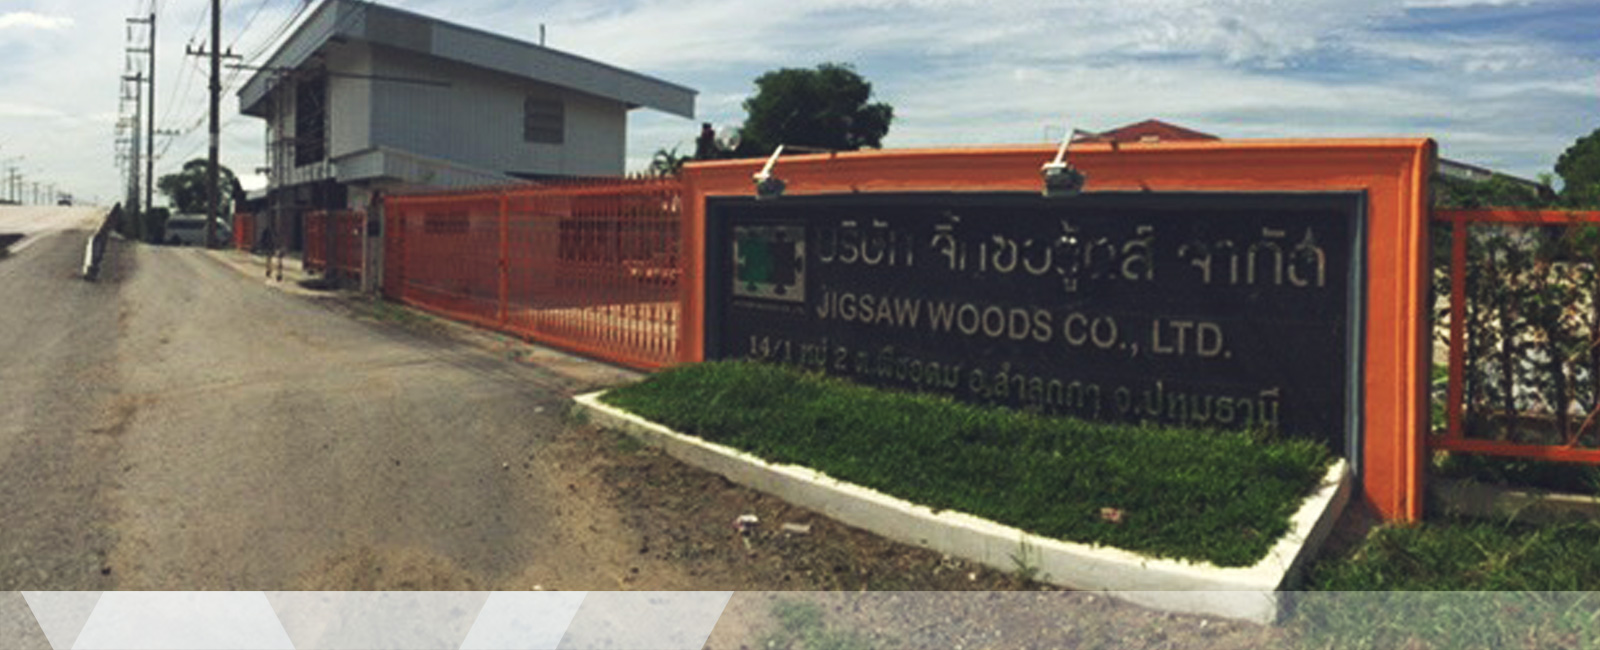 เกี่ยวกับ บริษัท จิ๊กซอ วู้ดส์ จำกัด JIGSAW WOODS Co., Ltd.